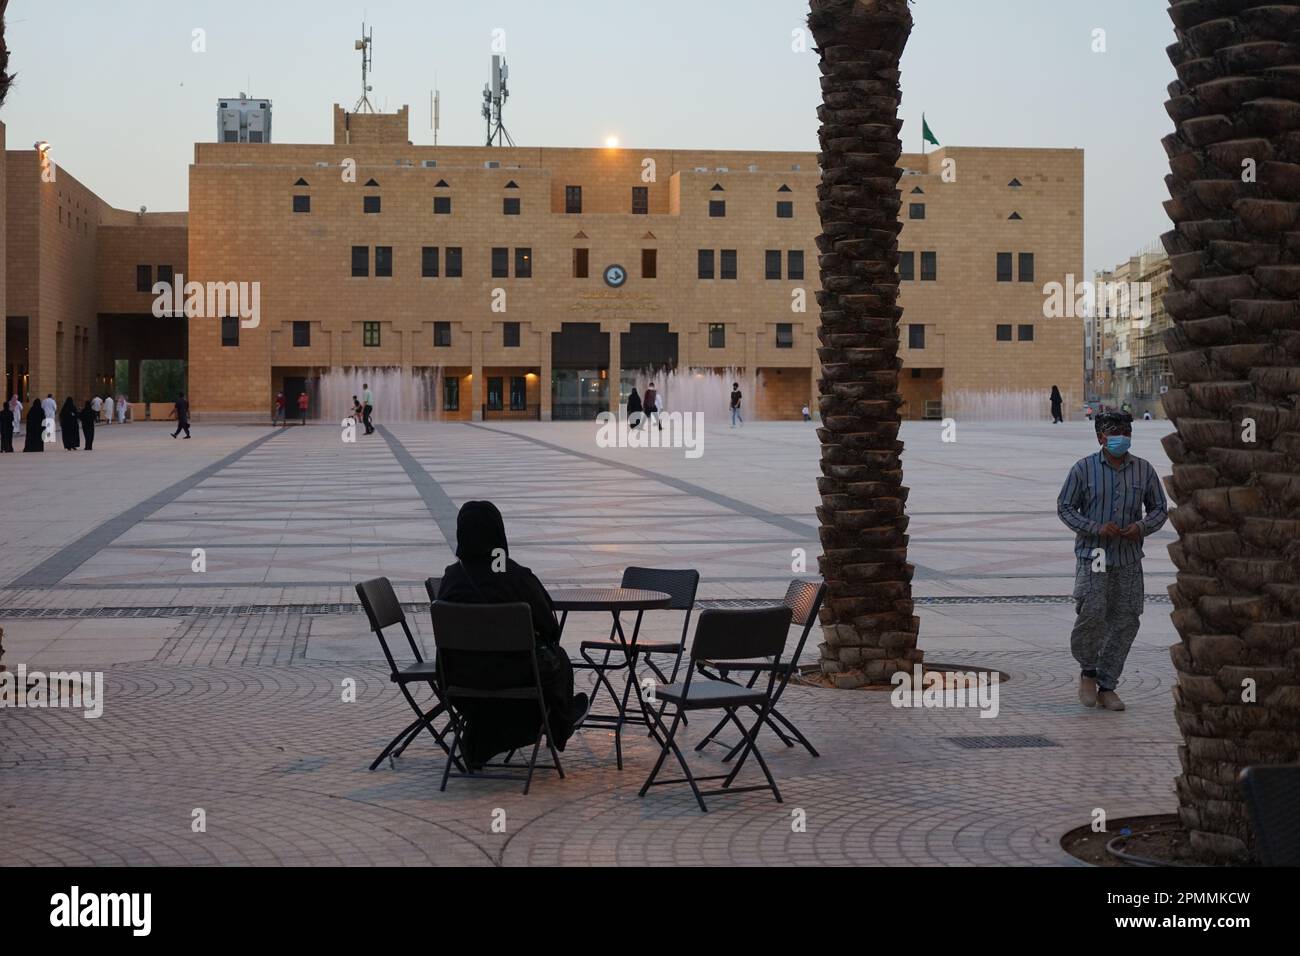 Une femme en niqab buvant du café, Deera Square, Riyad, Arabie Saoudite Banque D'Images